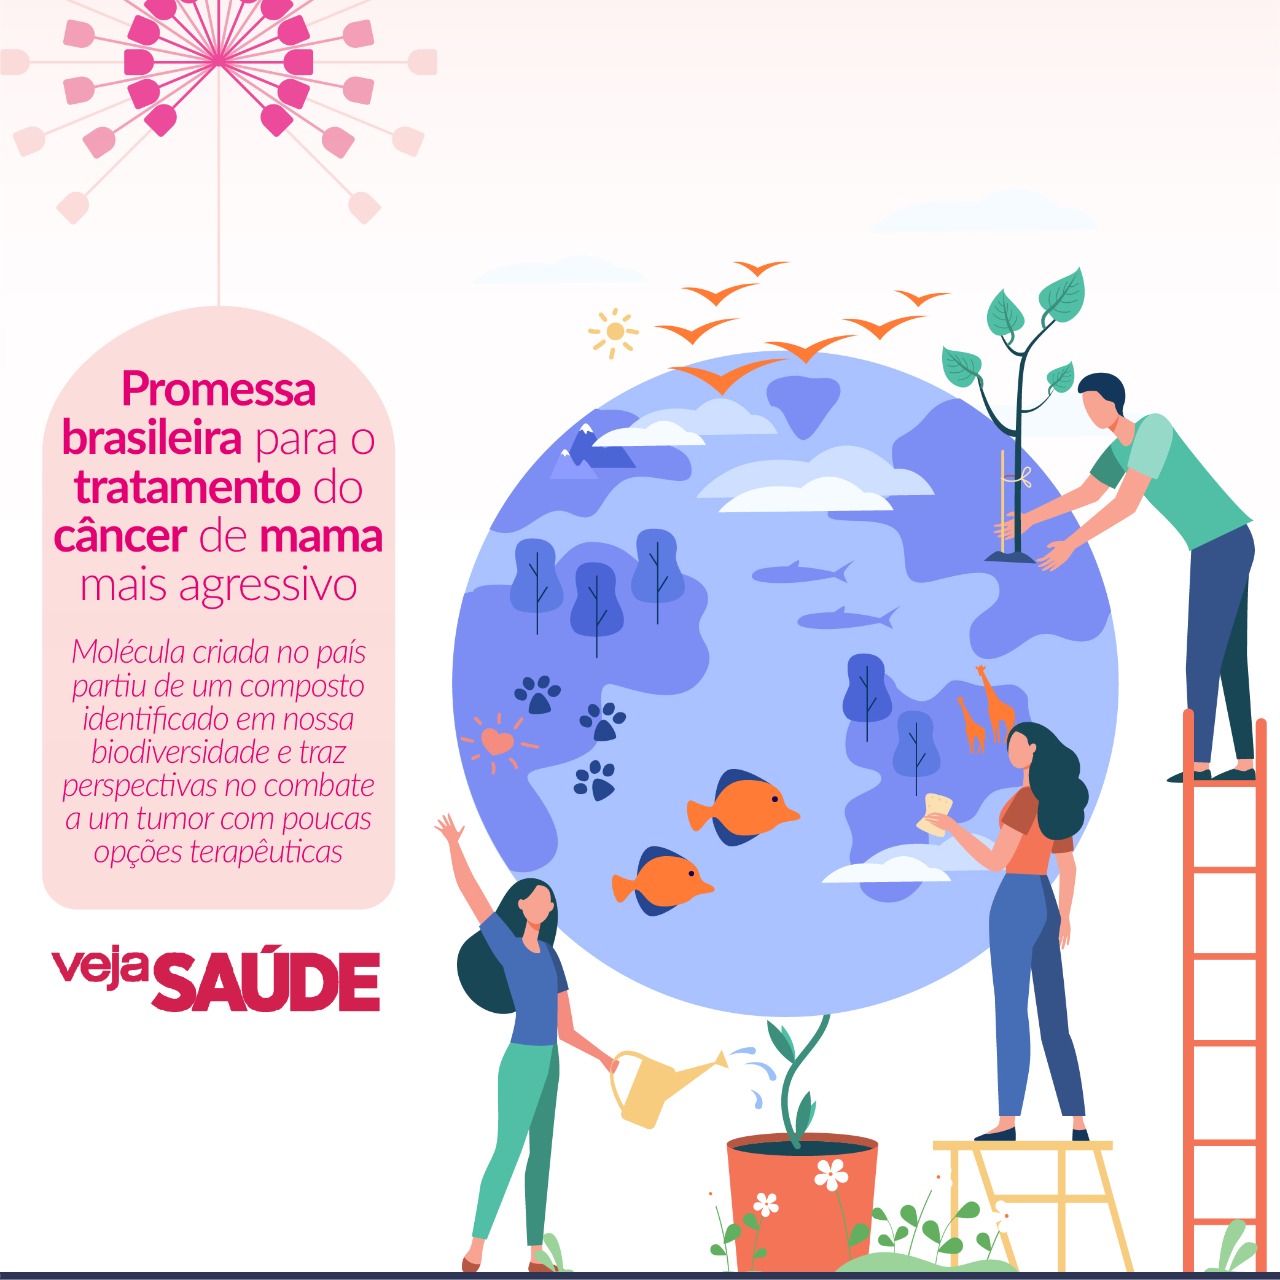 Promessa brasileira para o tratamento do câncer de mama mais agressivo